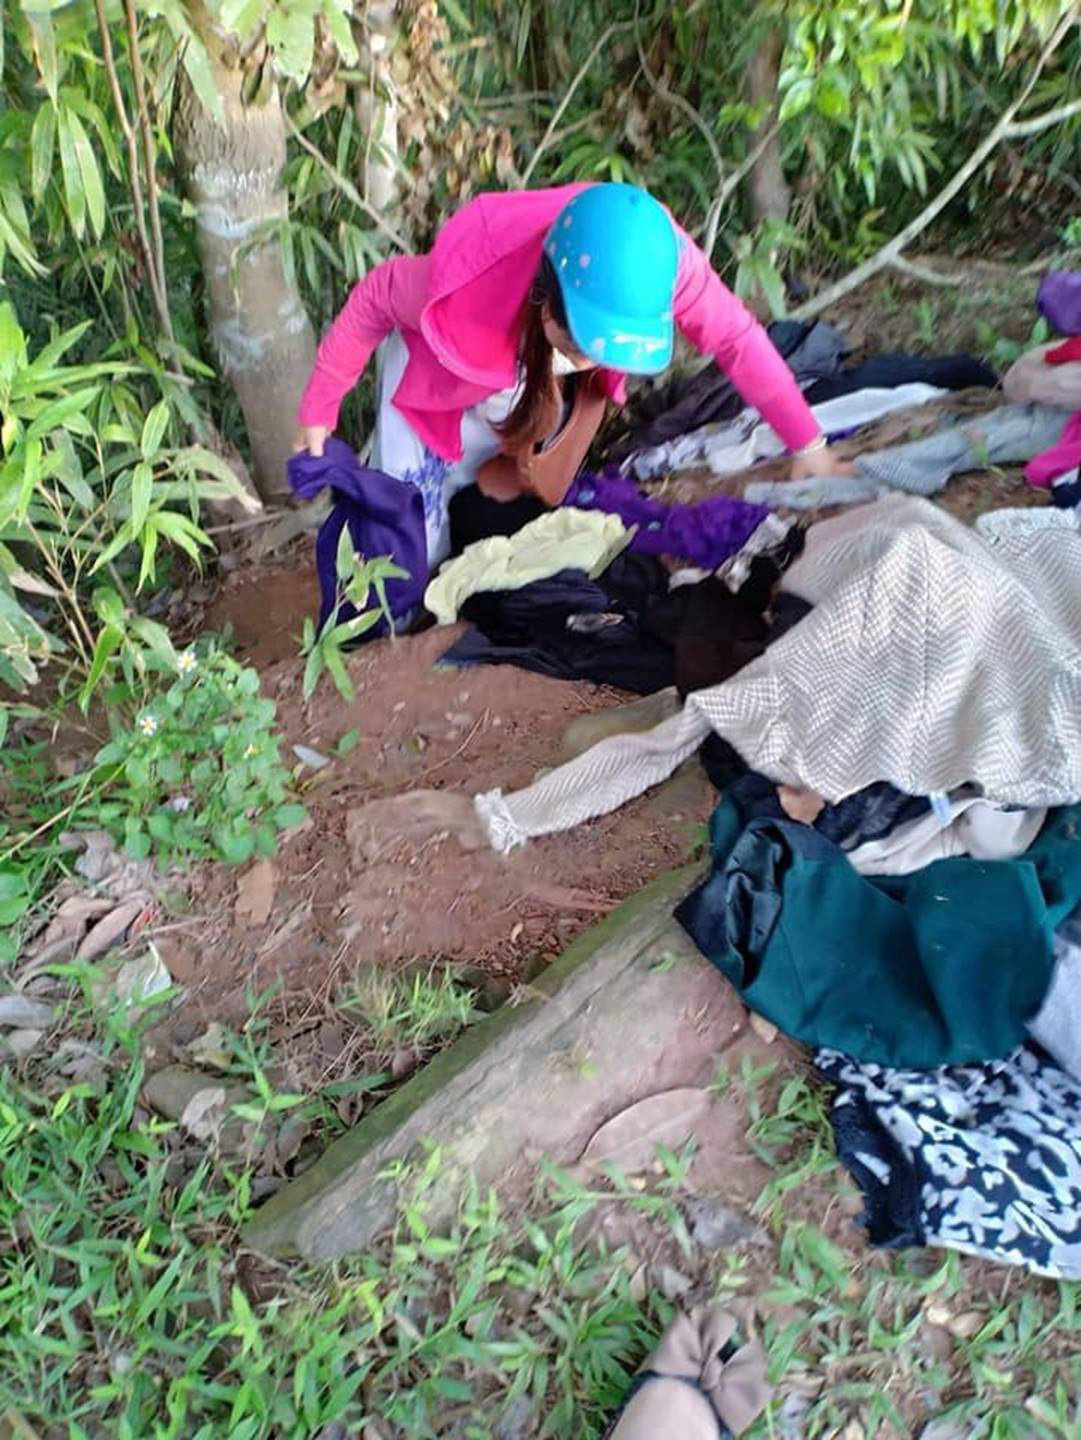 Thực trạng tại các tủ quần áo từ thiện tại Hà Nội: Bừa bộn gây mất trật tự và nhóm người tranh cướp trục lợi cá nhân - Ảnh 8.